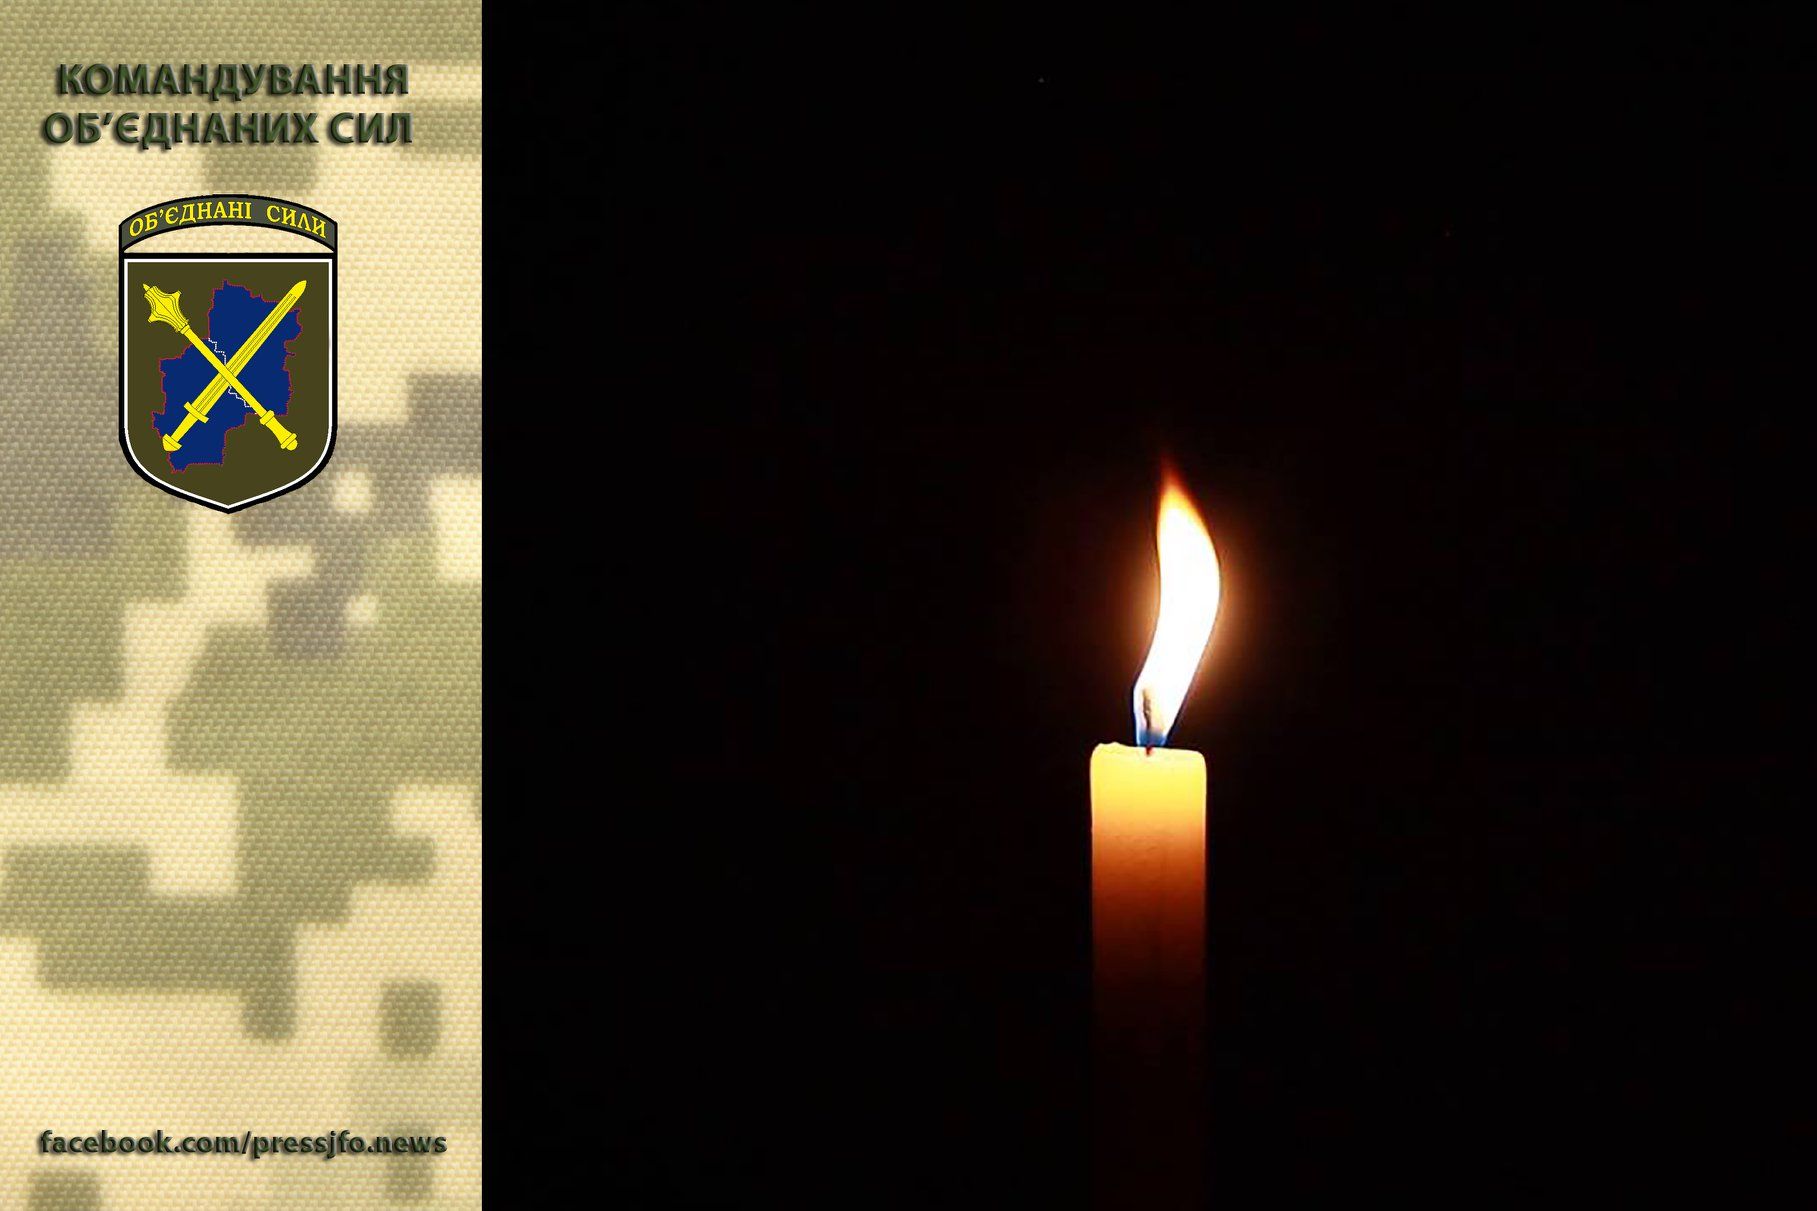 Костянтин Гаврик, Олександр Колбун та Олексій Попко  загинули унаслідок обстрілу російських найманців у ніч на 15 серпня на Донбасі